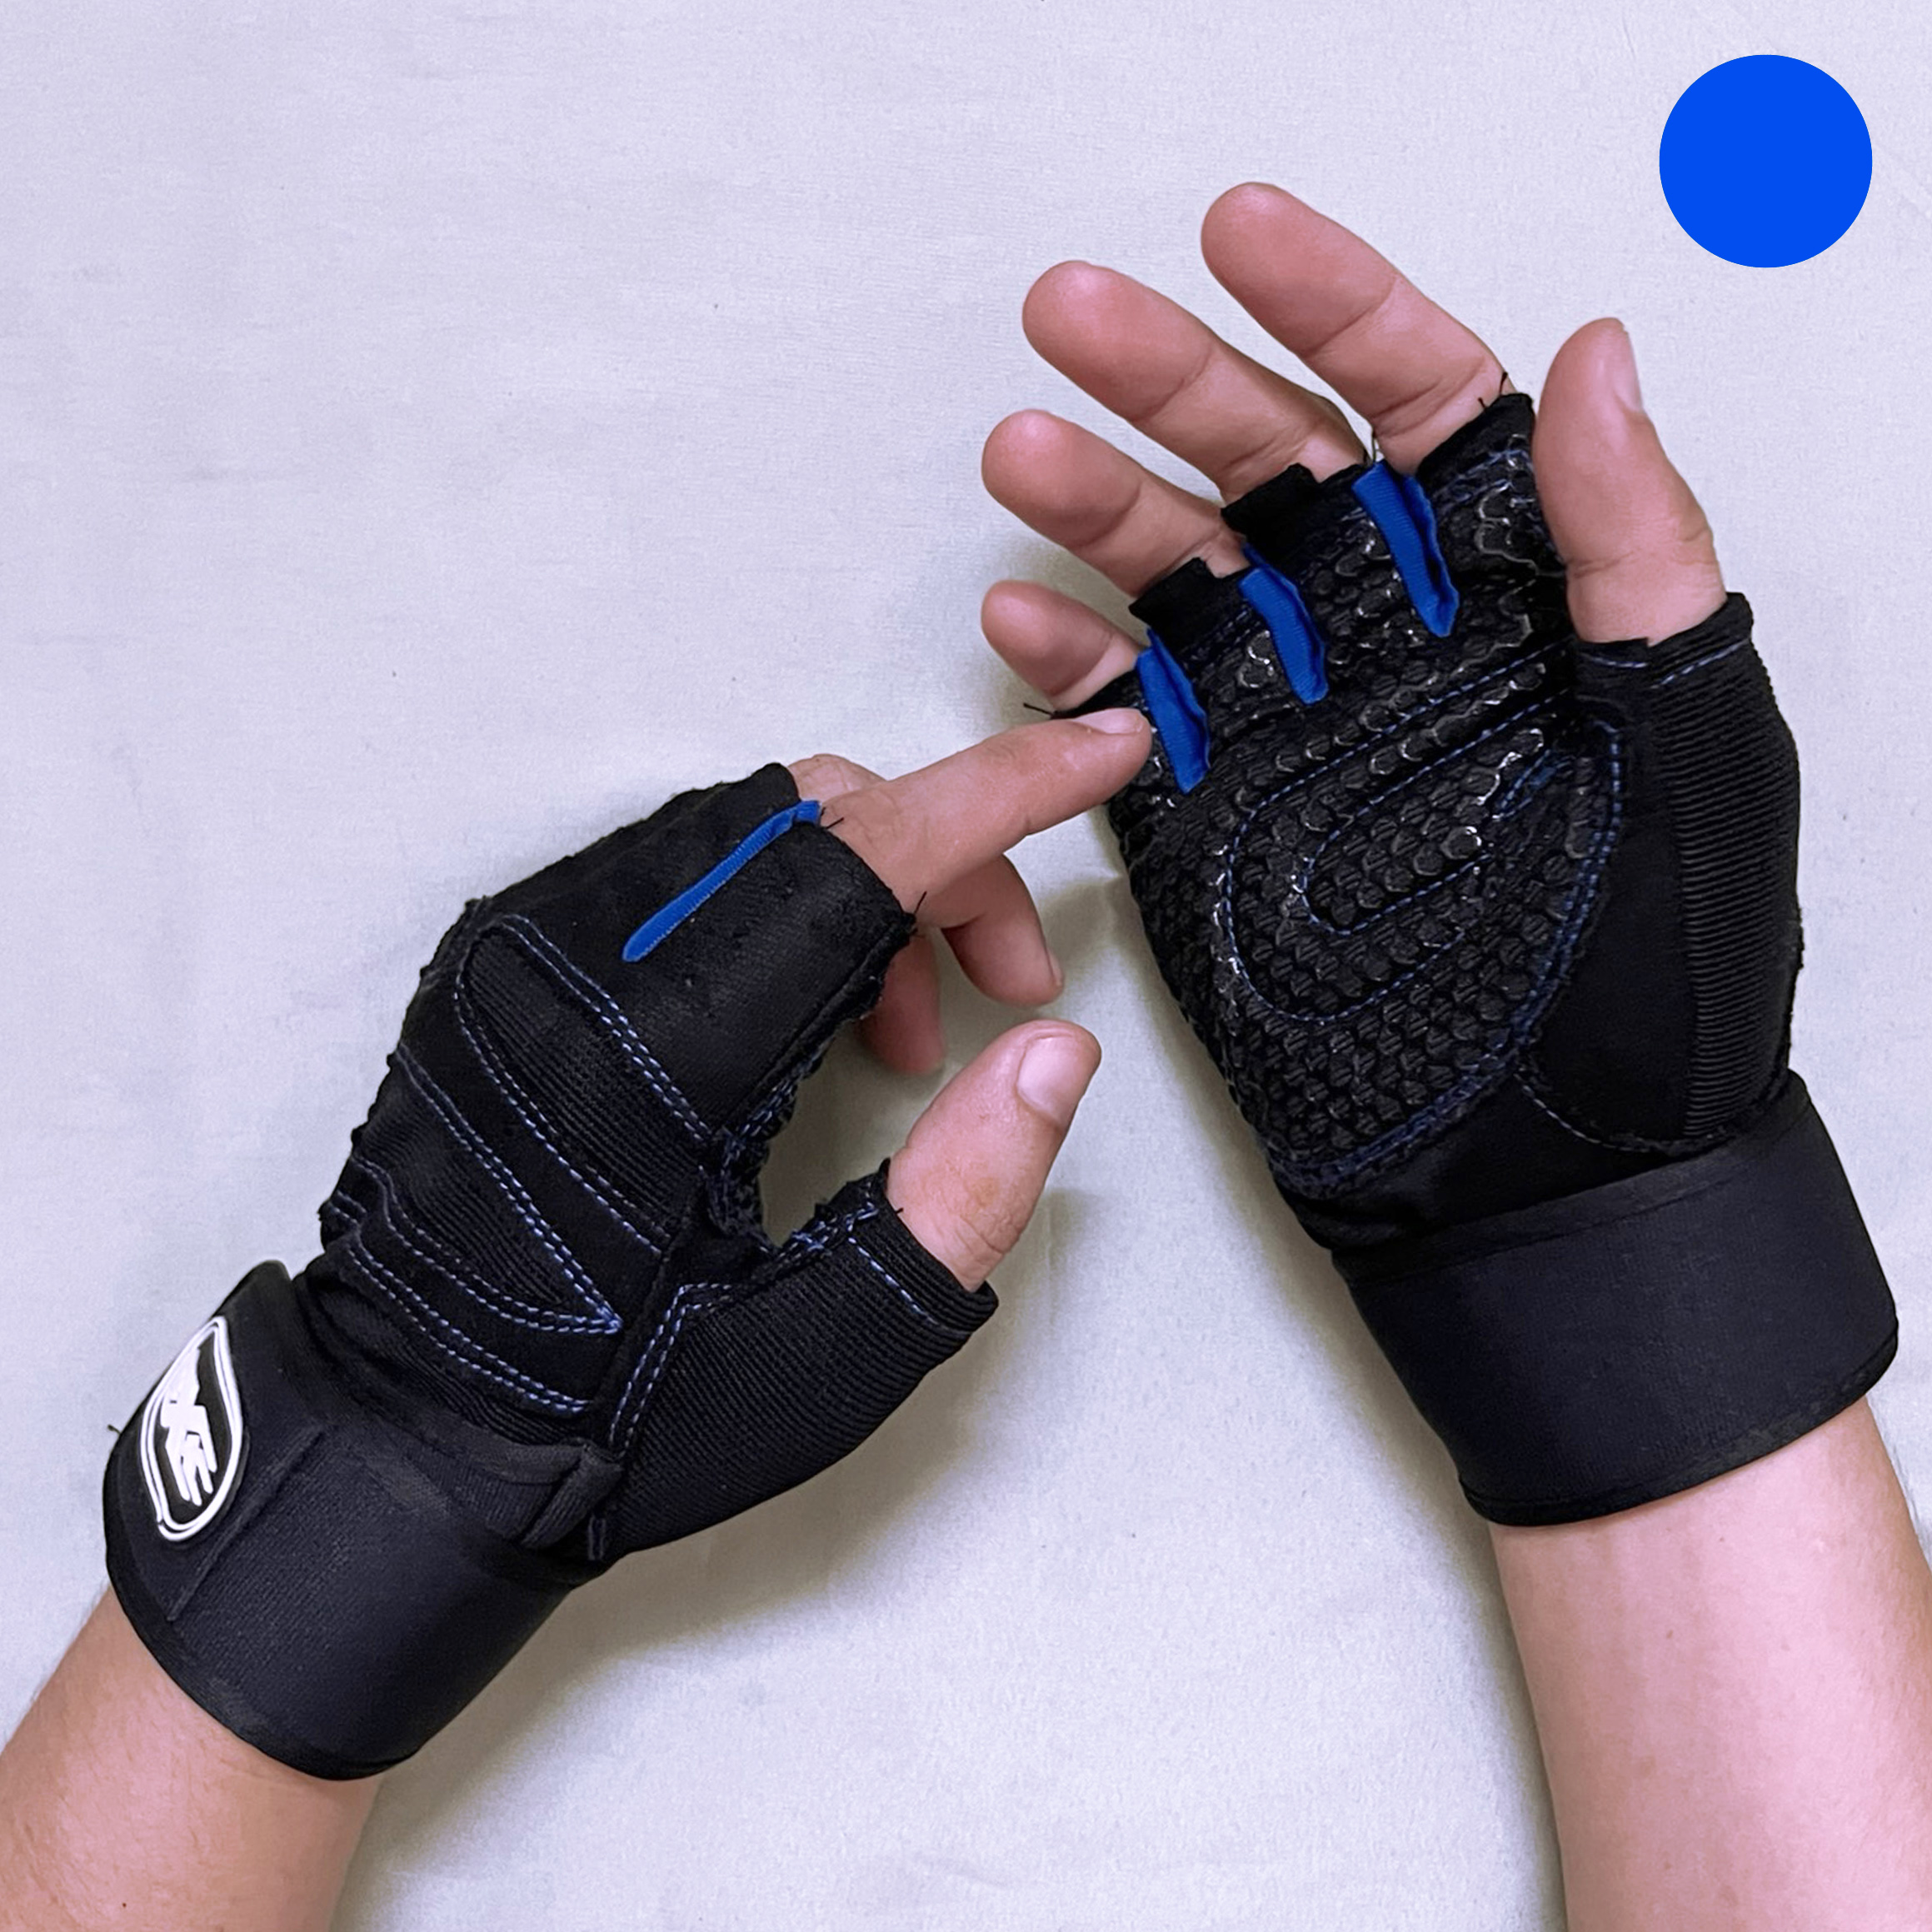 Găng tay tập gym có quấn cổ tay chính hãng XSPORT- chống chai và trợ lực cổ tay